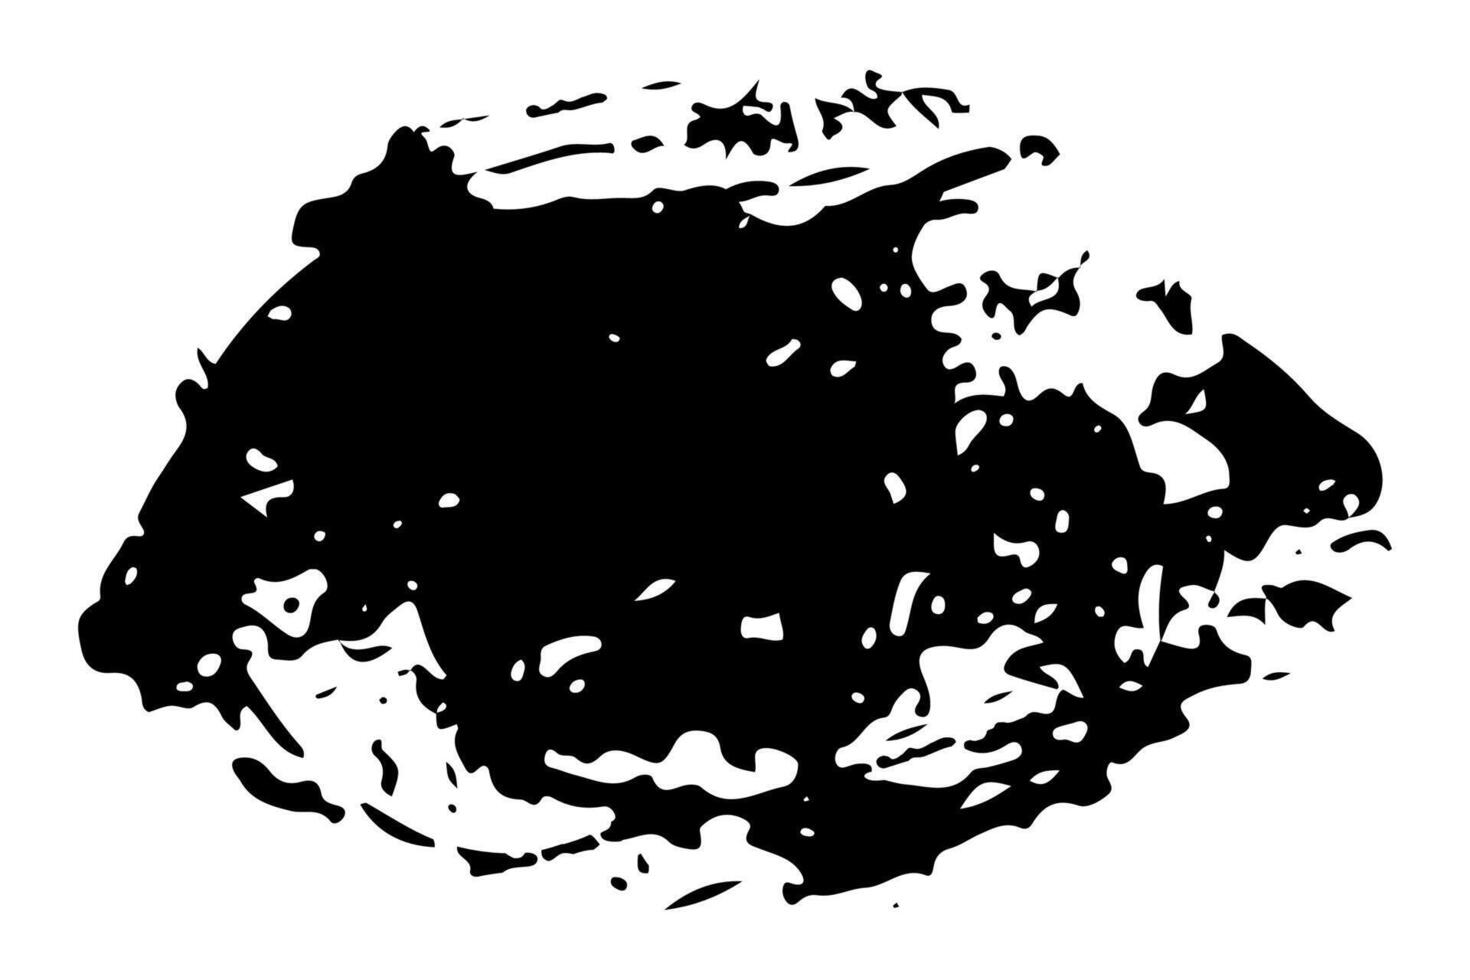 tinta splat superpuesto por puntos en negro y blanco. vector ilustración